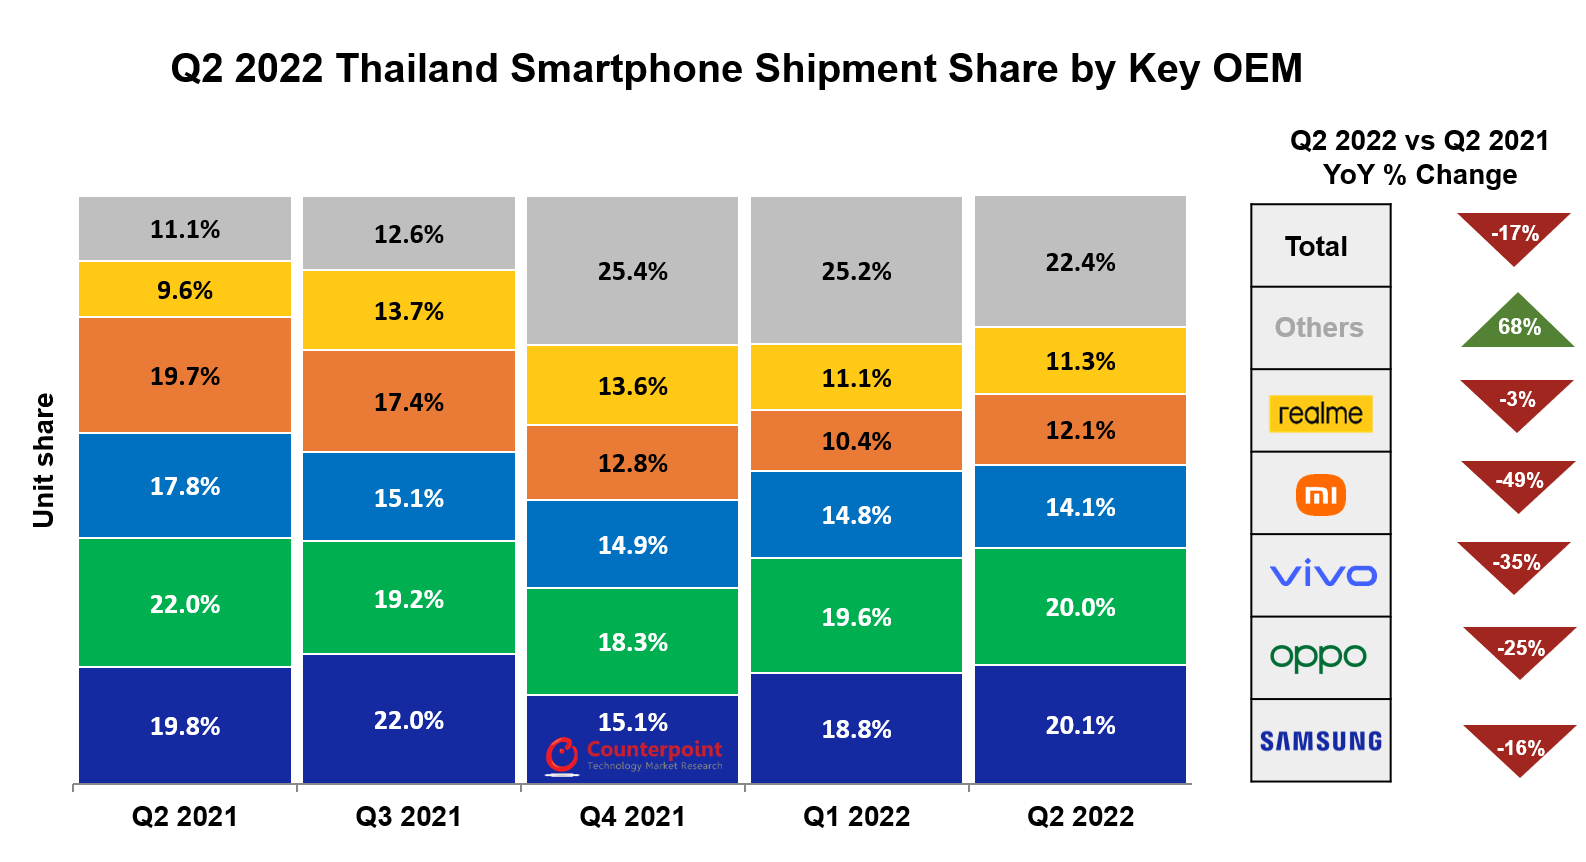 ที่มา: Counterpoint Monthly Thailand Smartphone Channel Share Tracker, Q2 2022